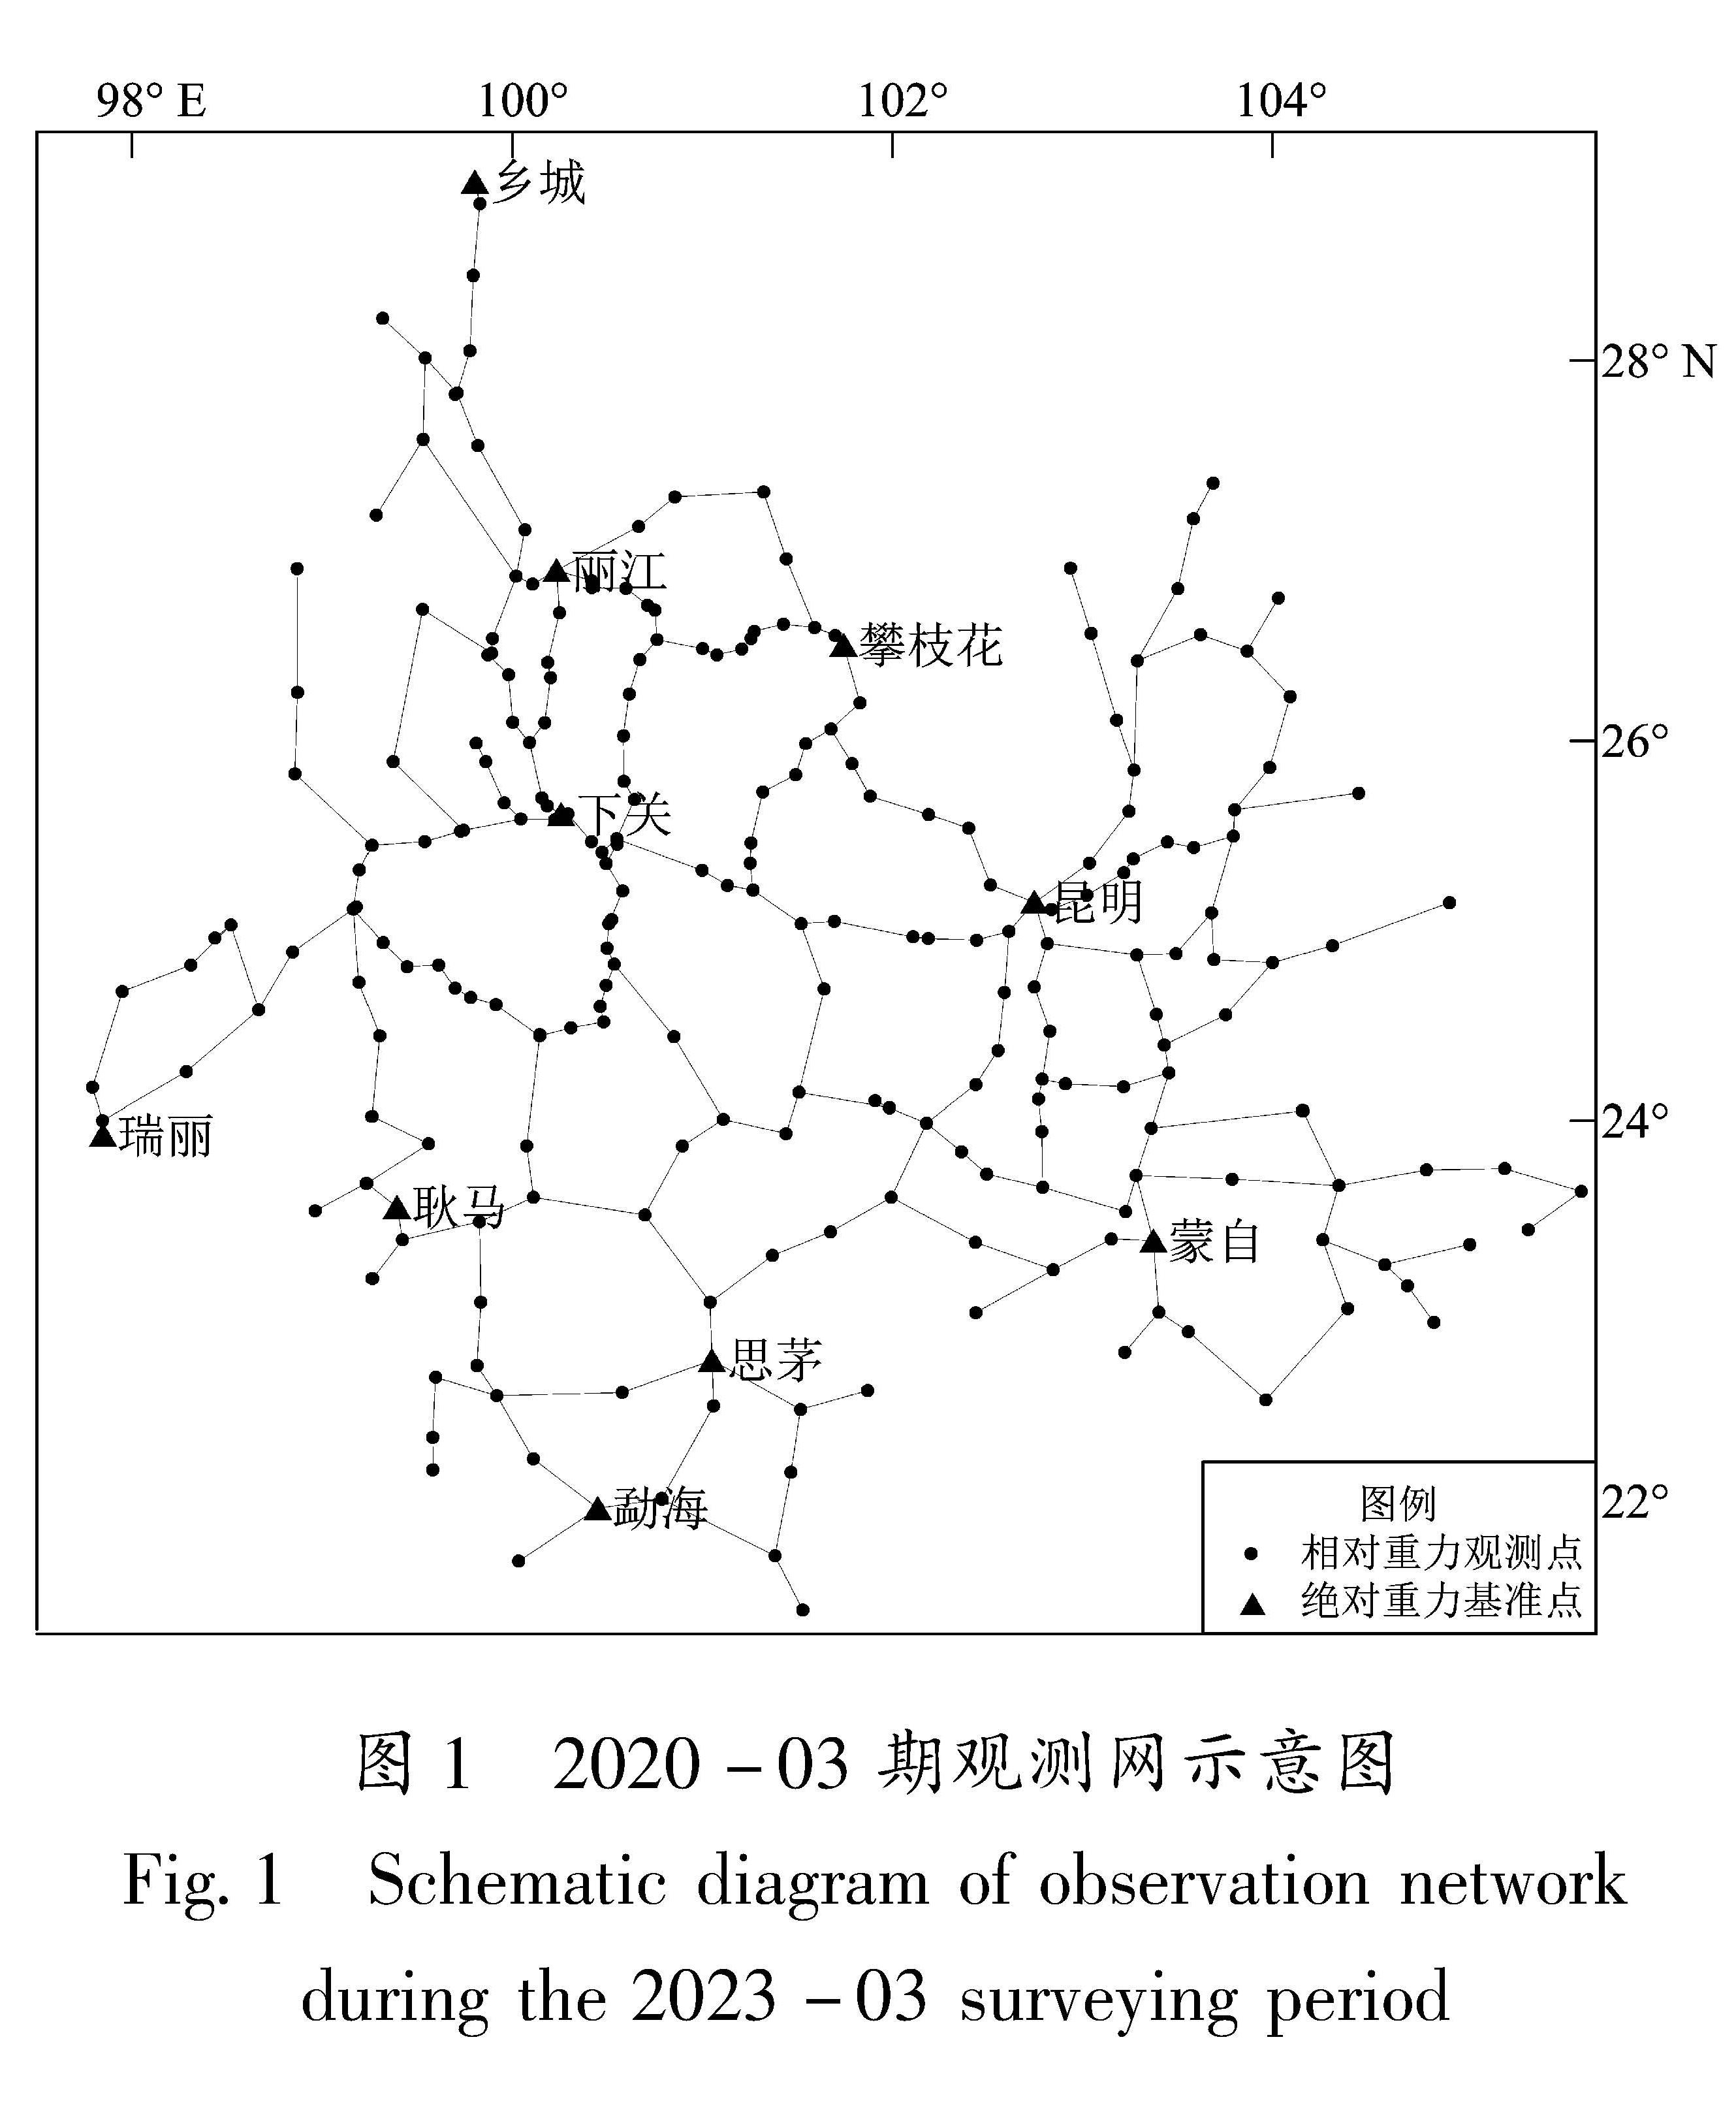 图1 2020-03期观测网示意图<br/>Fig.1 Schematic diagram of observation network during the 2023-03 surveying period